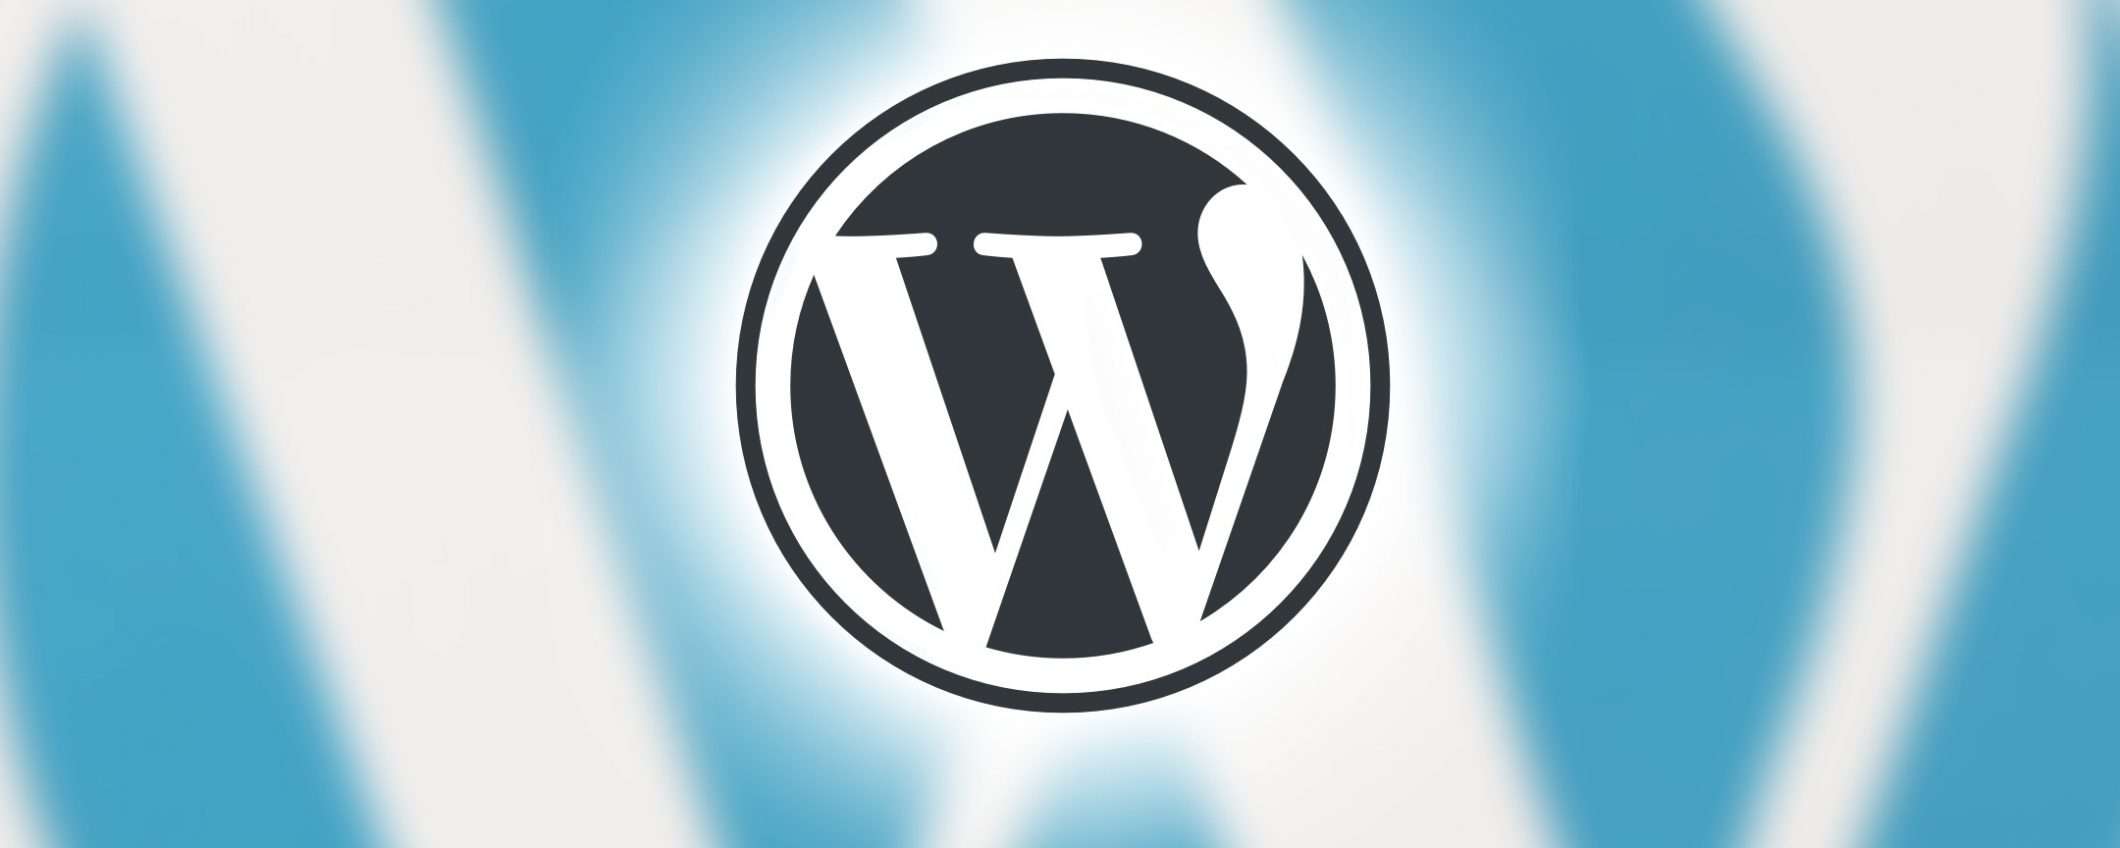 Vuoi aprire un sito WordPress per e-commerce? Ecco il corso per te!